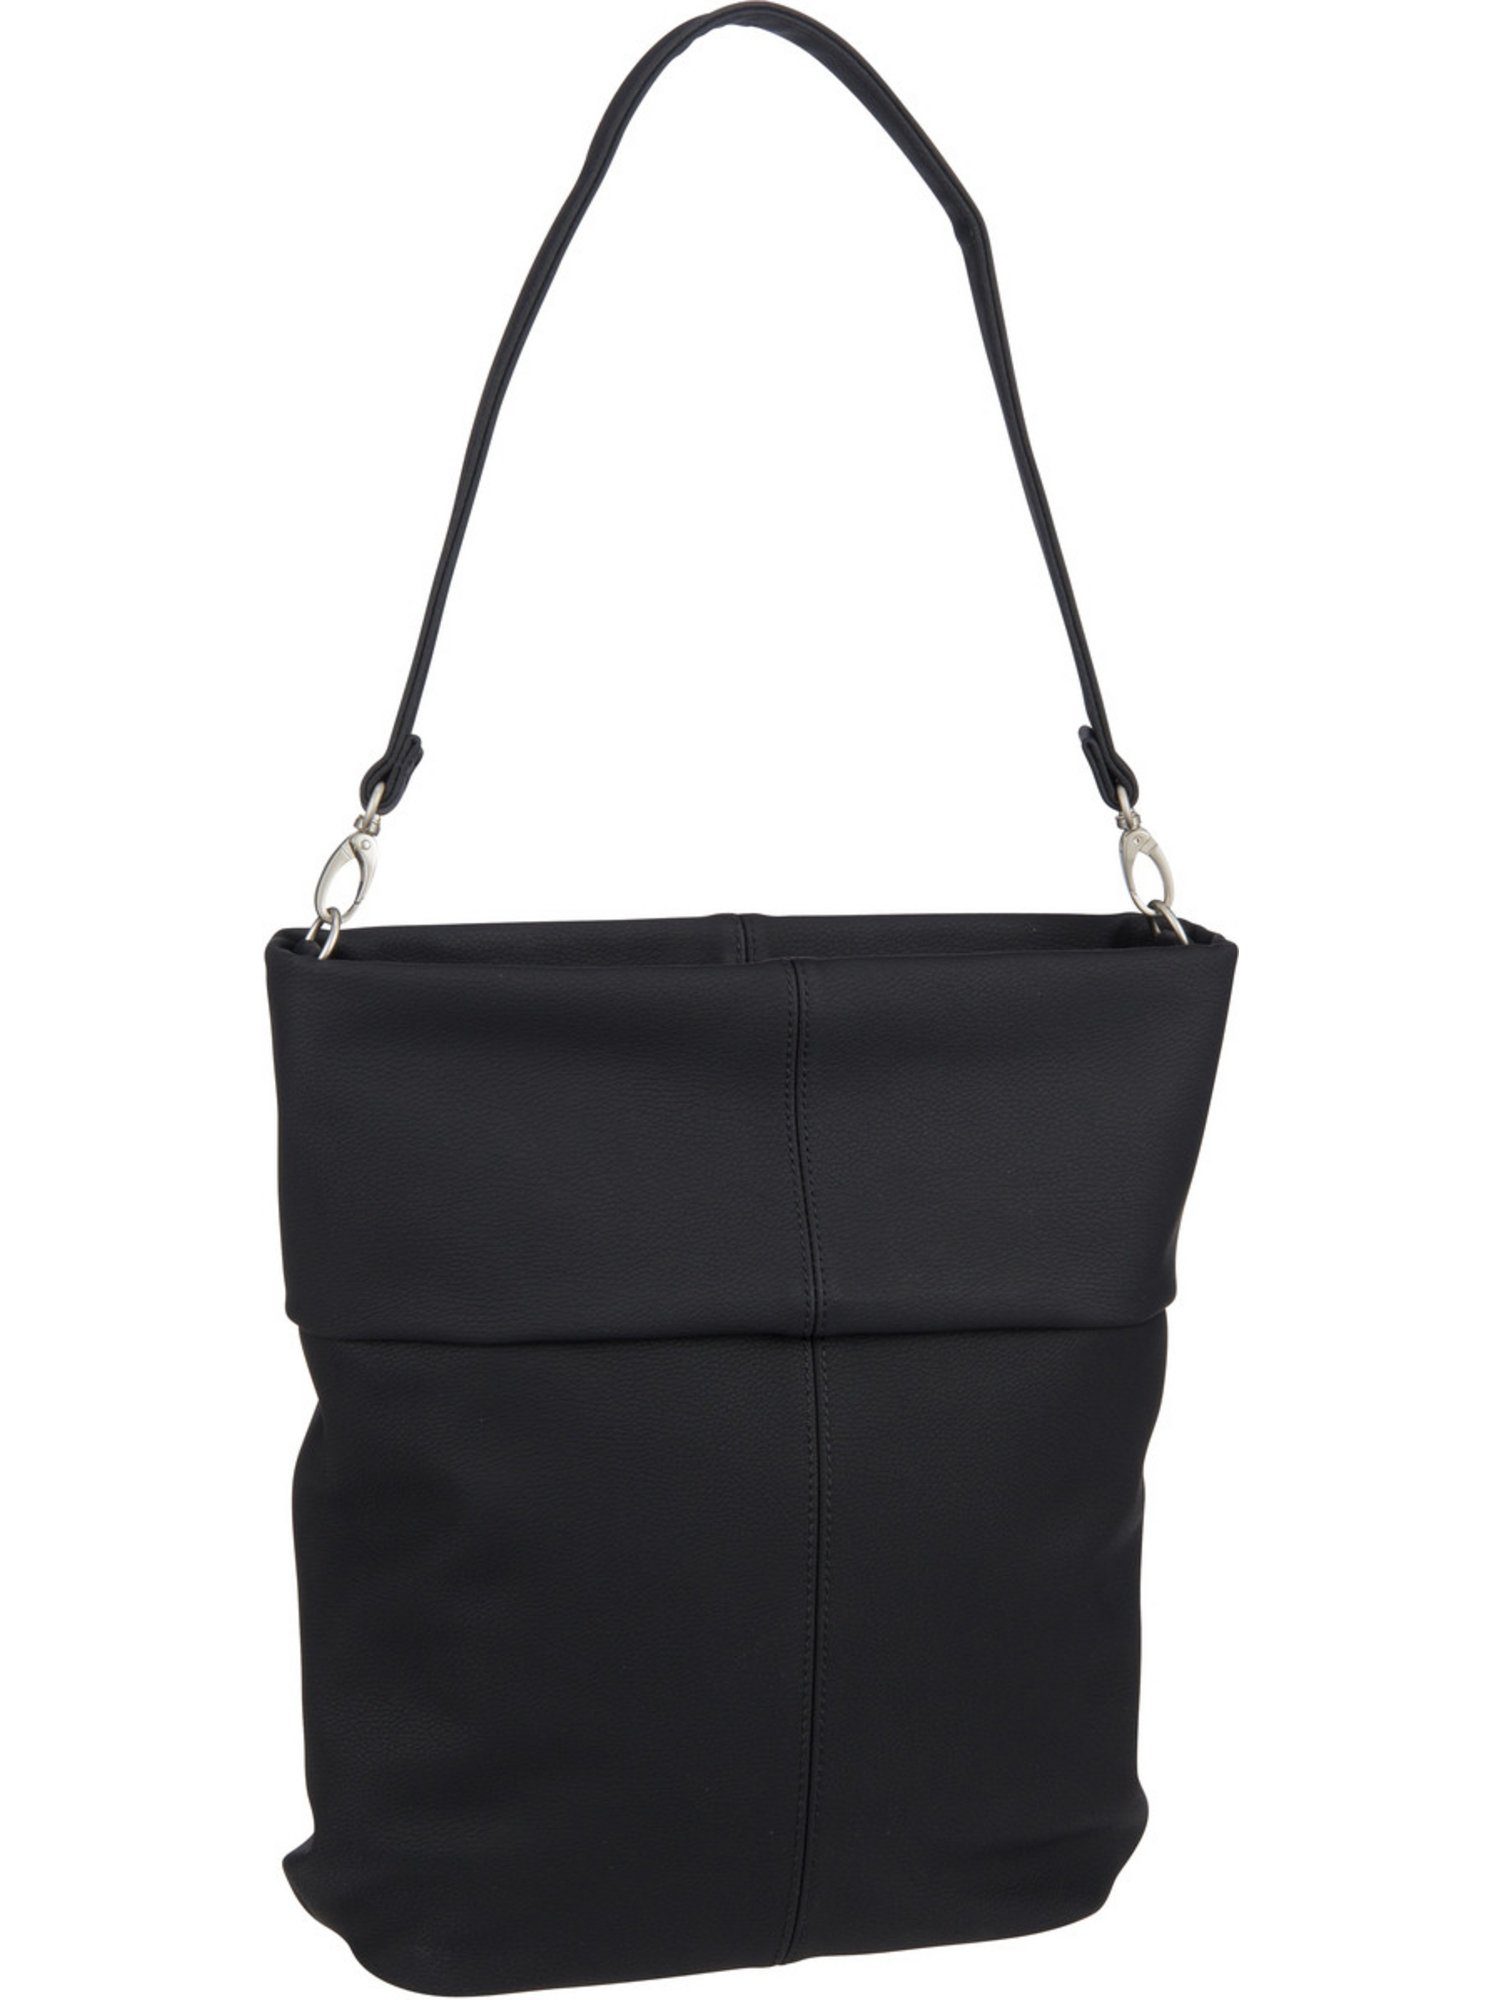 Zwei Handtasche M12, Mademoiselle Hobo Nubuk/Black Bag